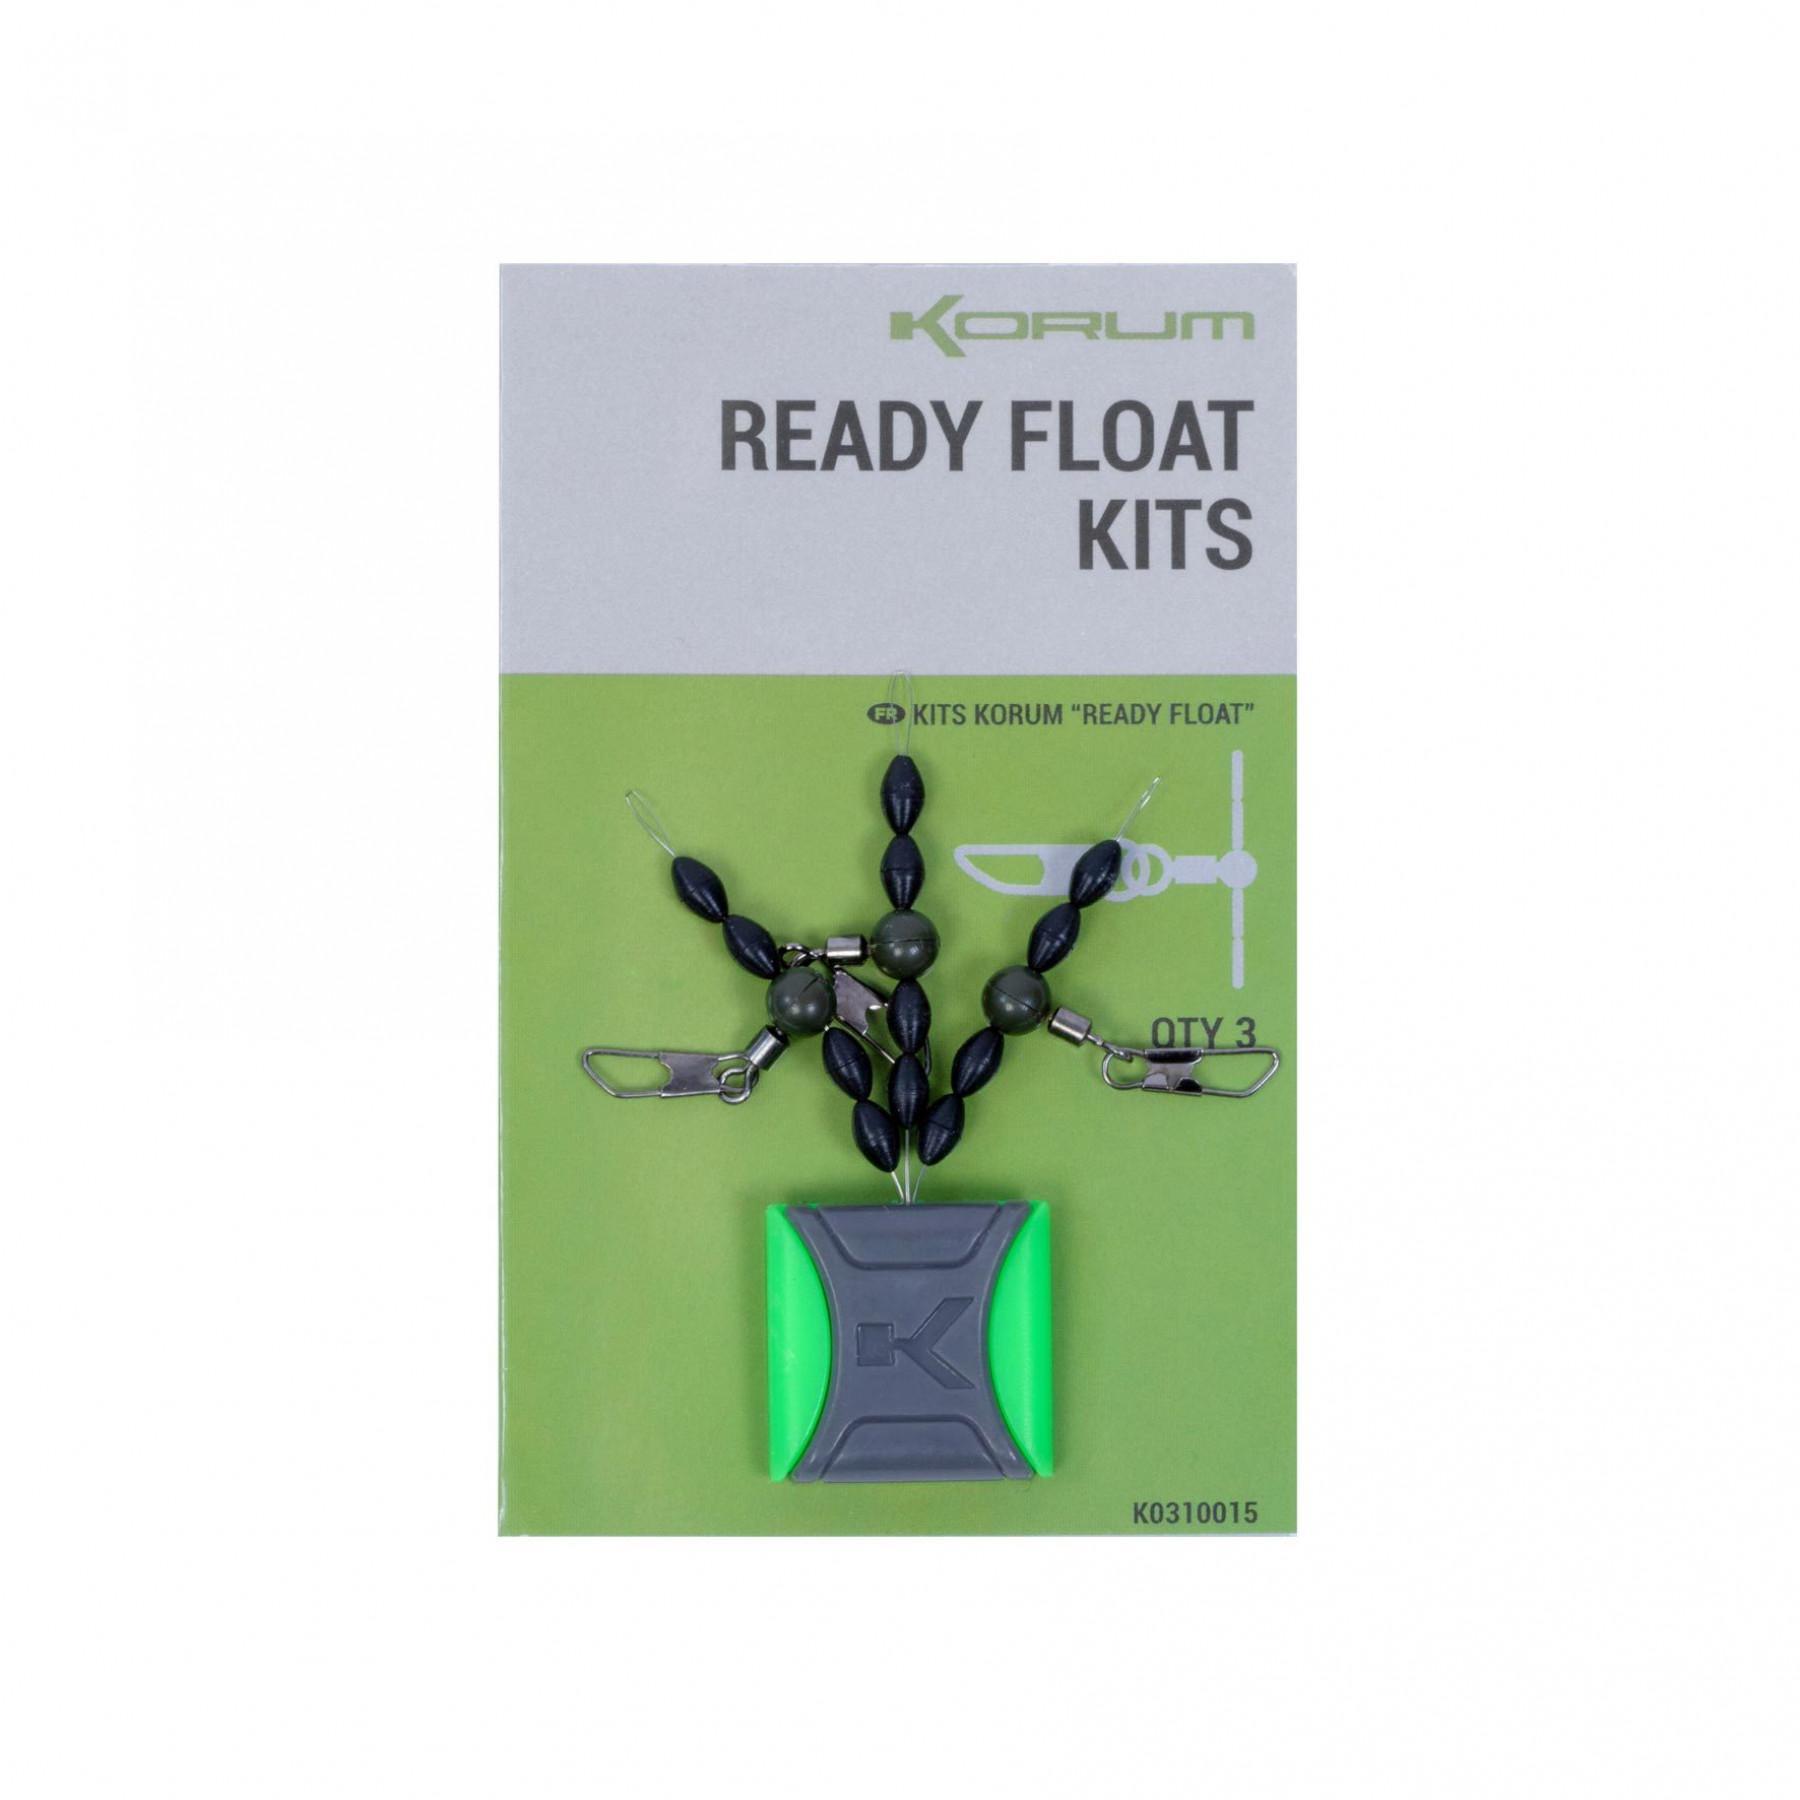 Ready-made float kits Korum 3x10